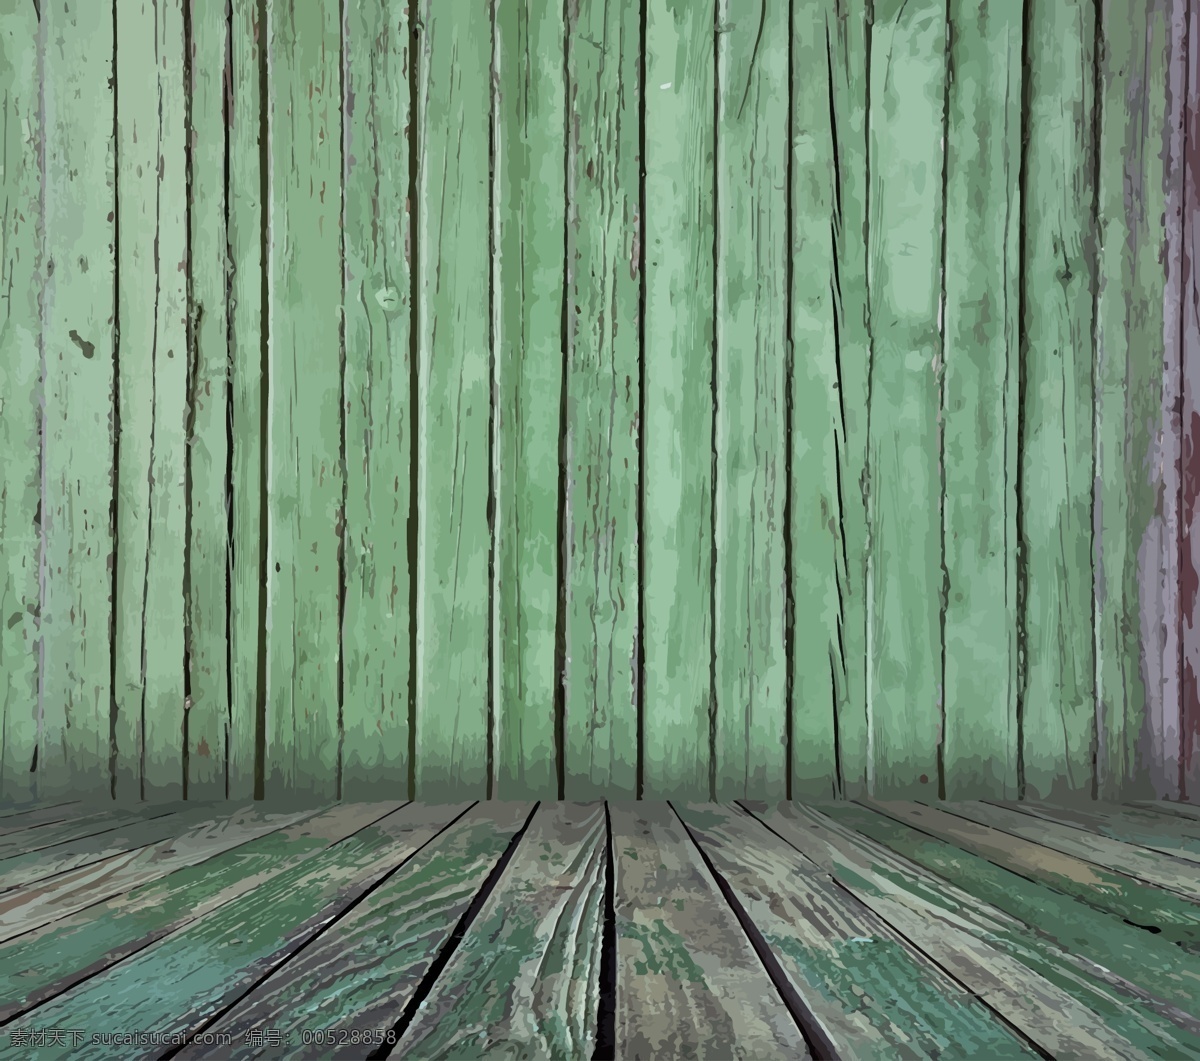 木纹 木板 木地板 彩色木板 木质纹理 wood 手绘木板 逼真木板 背景底纹 矢量 底纹边框